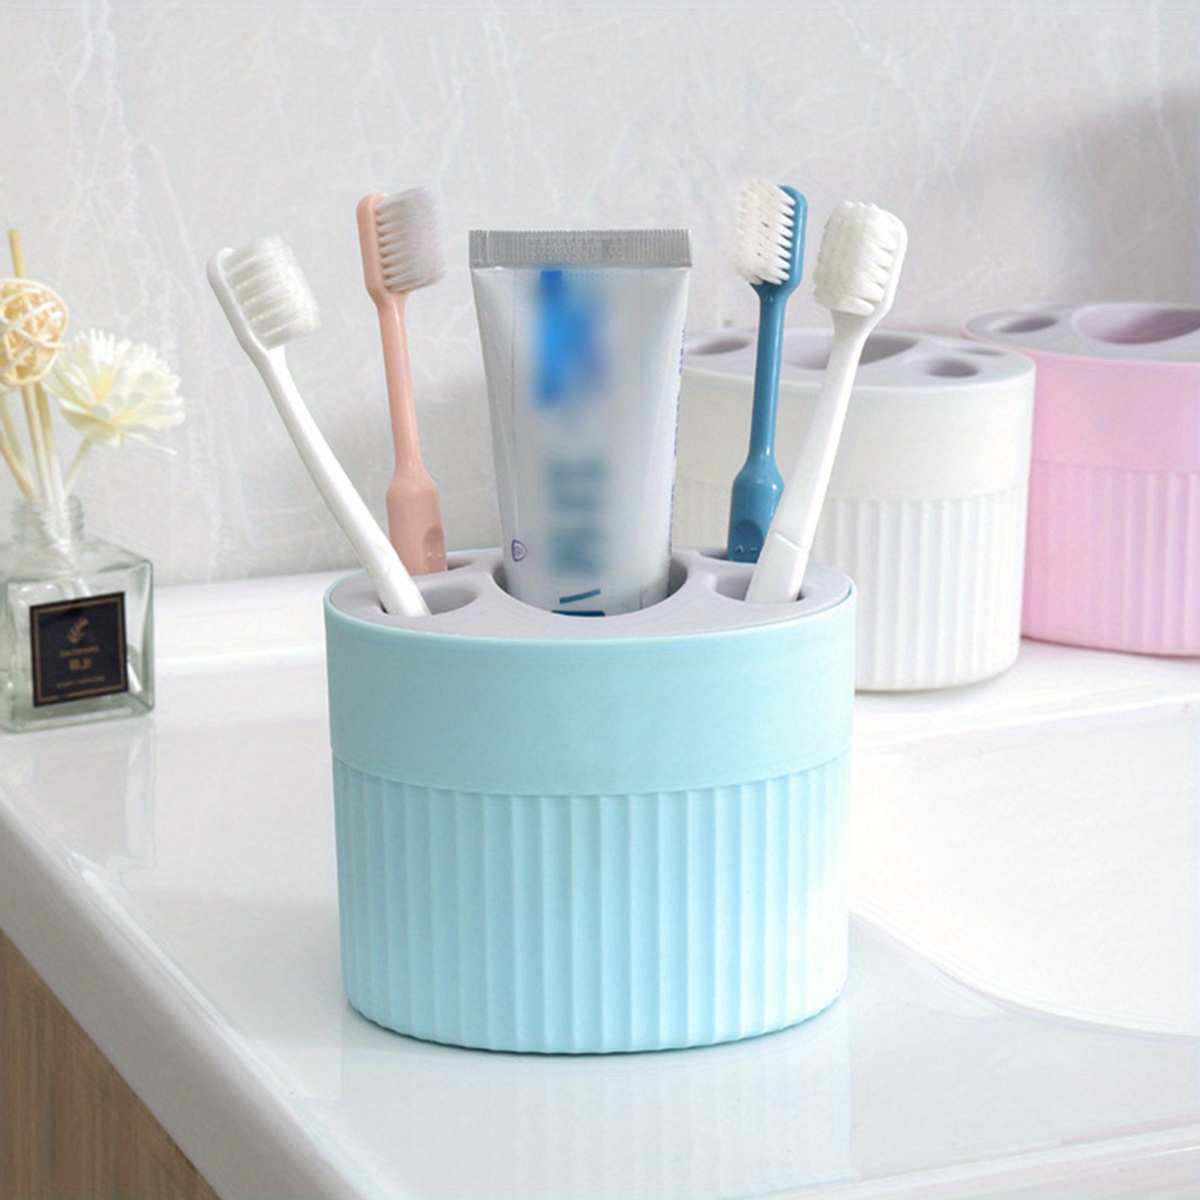 Organizador cepillos de dientes - HUS Concept